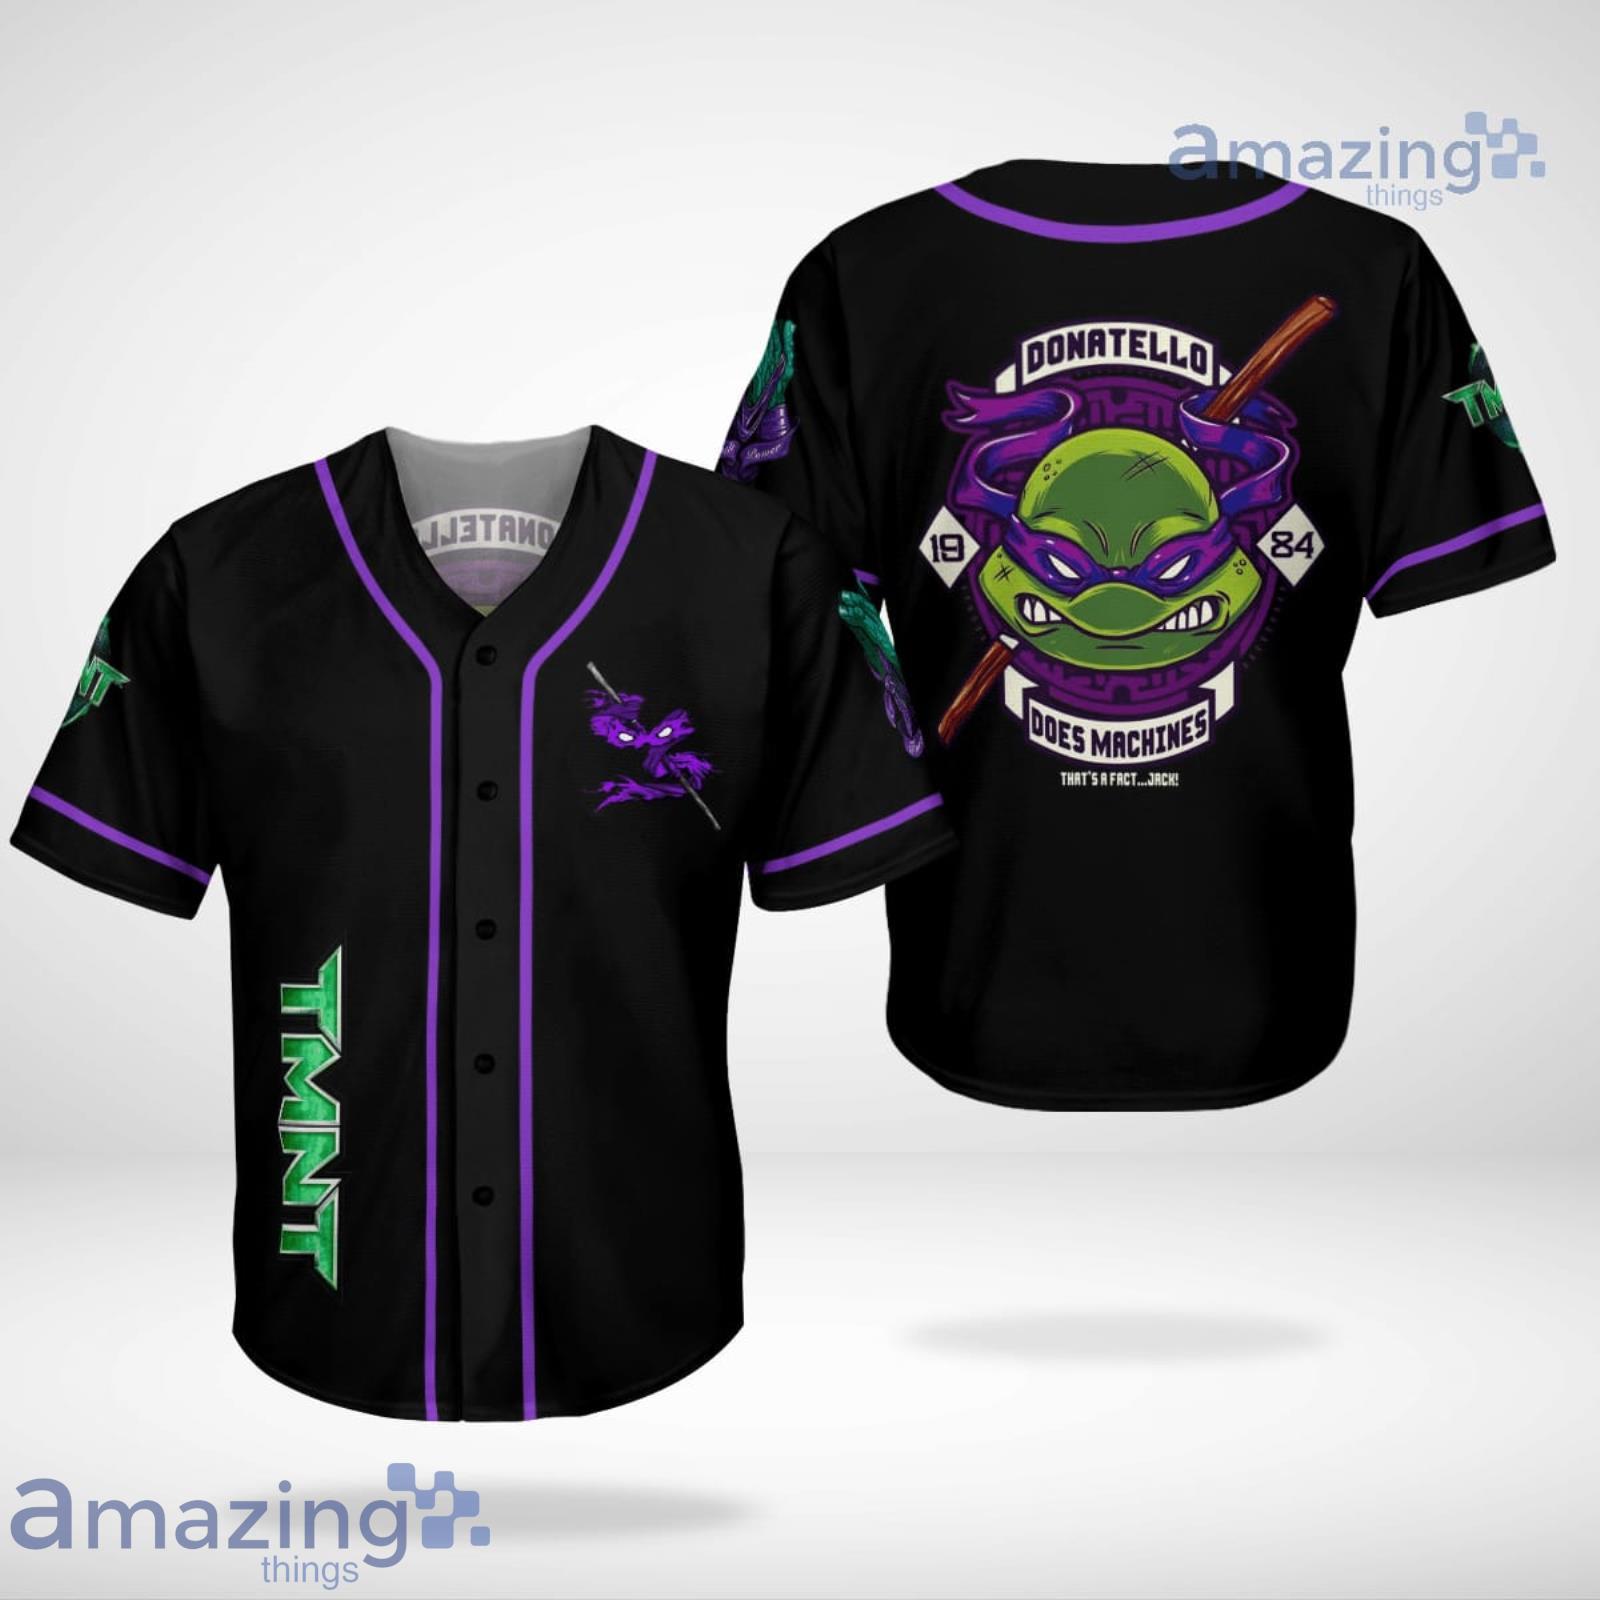 https://image.whatamazingthings.com/2023/03/donatello-tmnt-ninja-turtles-baseball-jersey-shirt.jpg